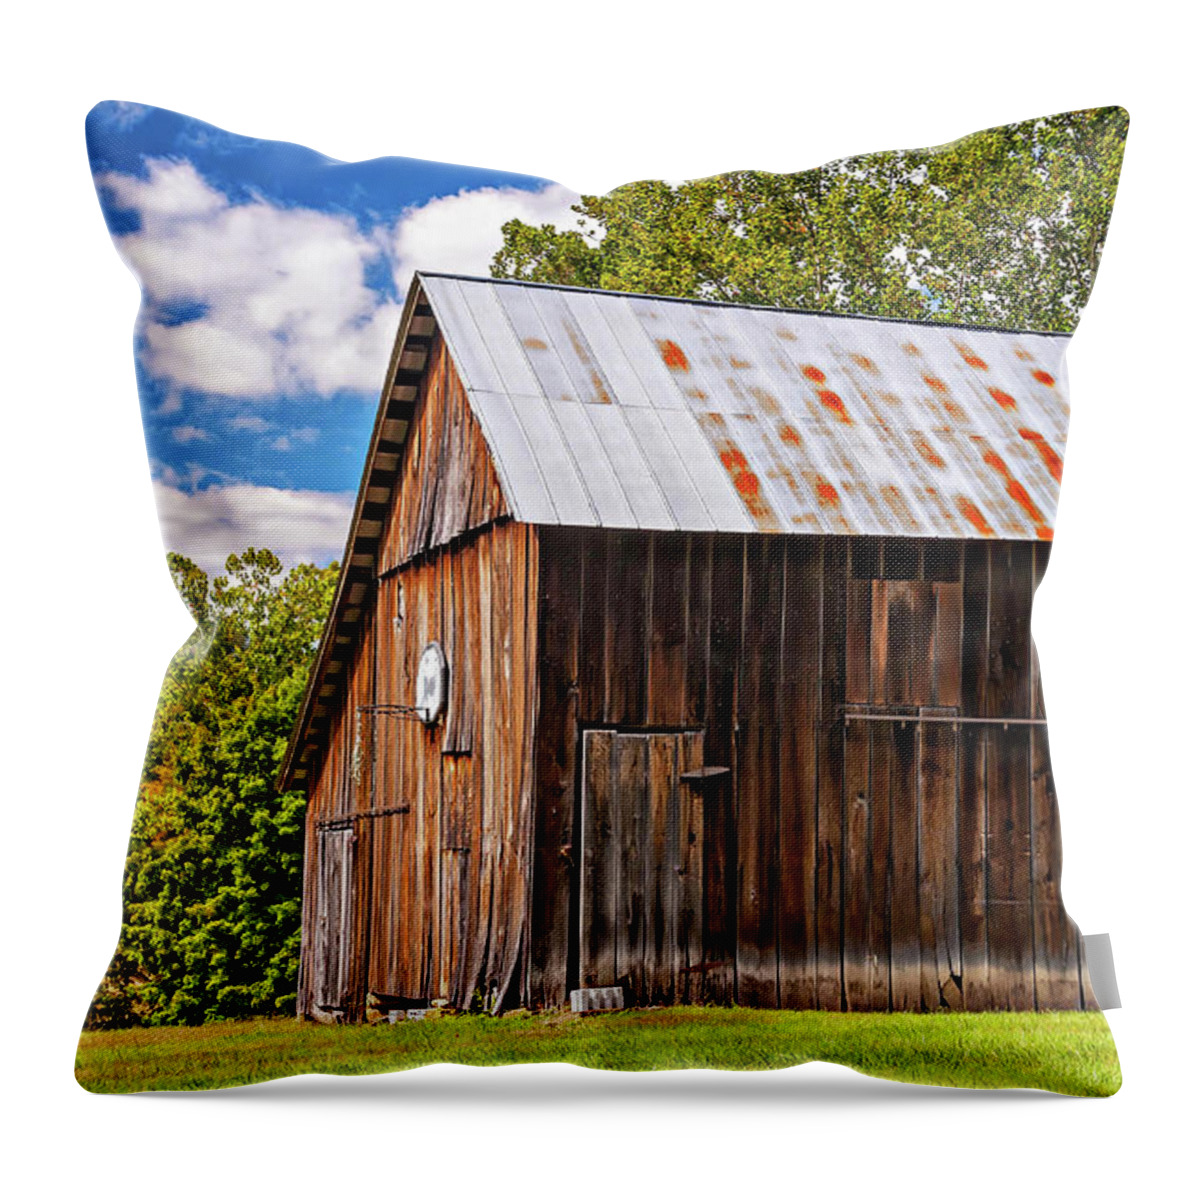 Barn Throw Pillow featuring the photograph An American Barn 2 by Steve Harrington